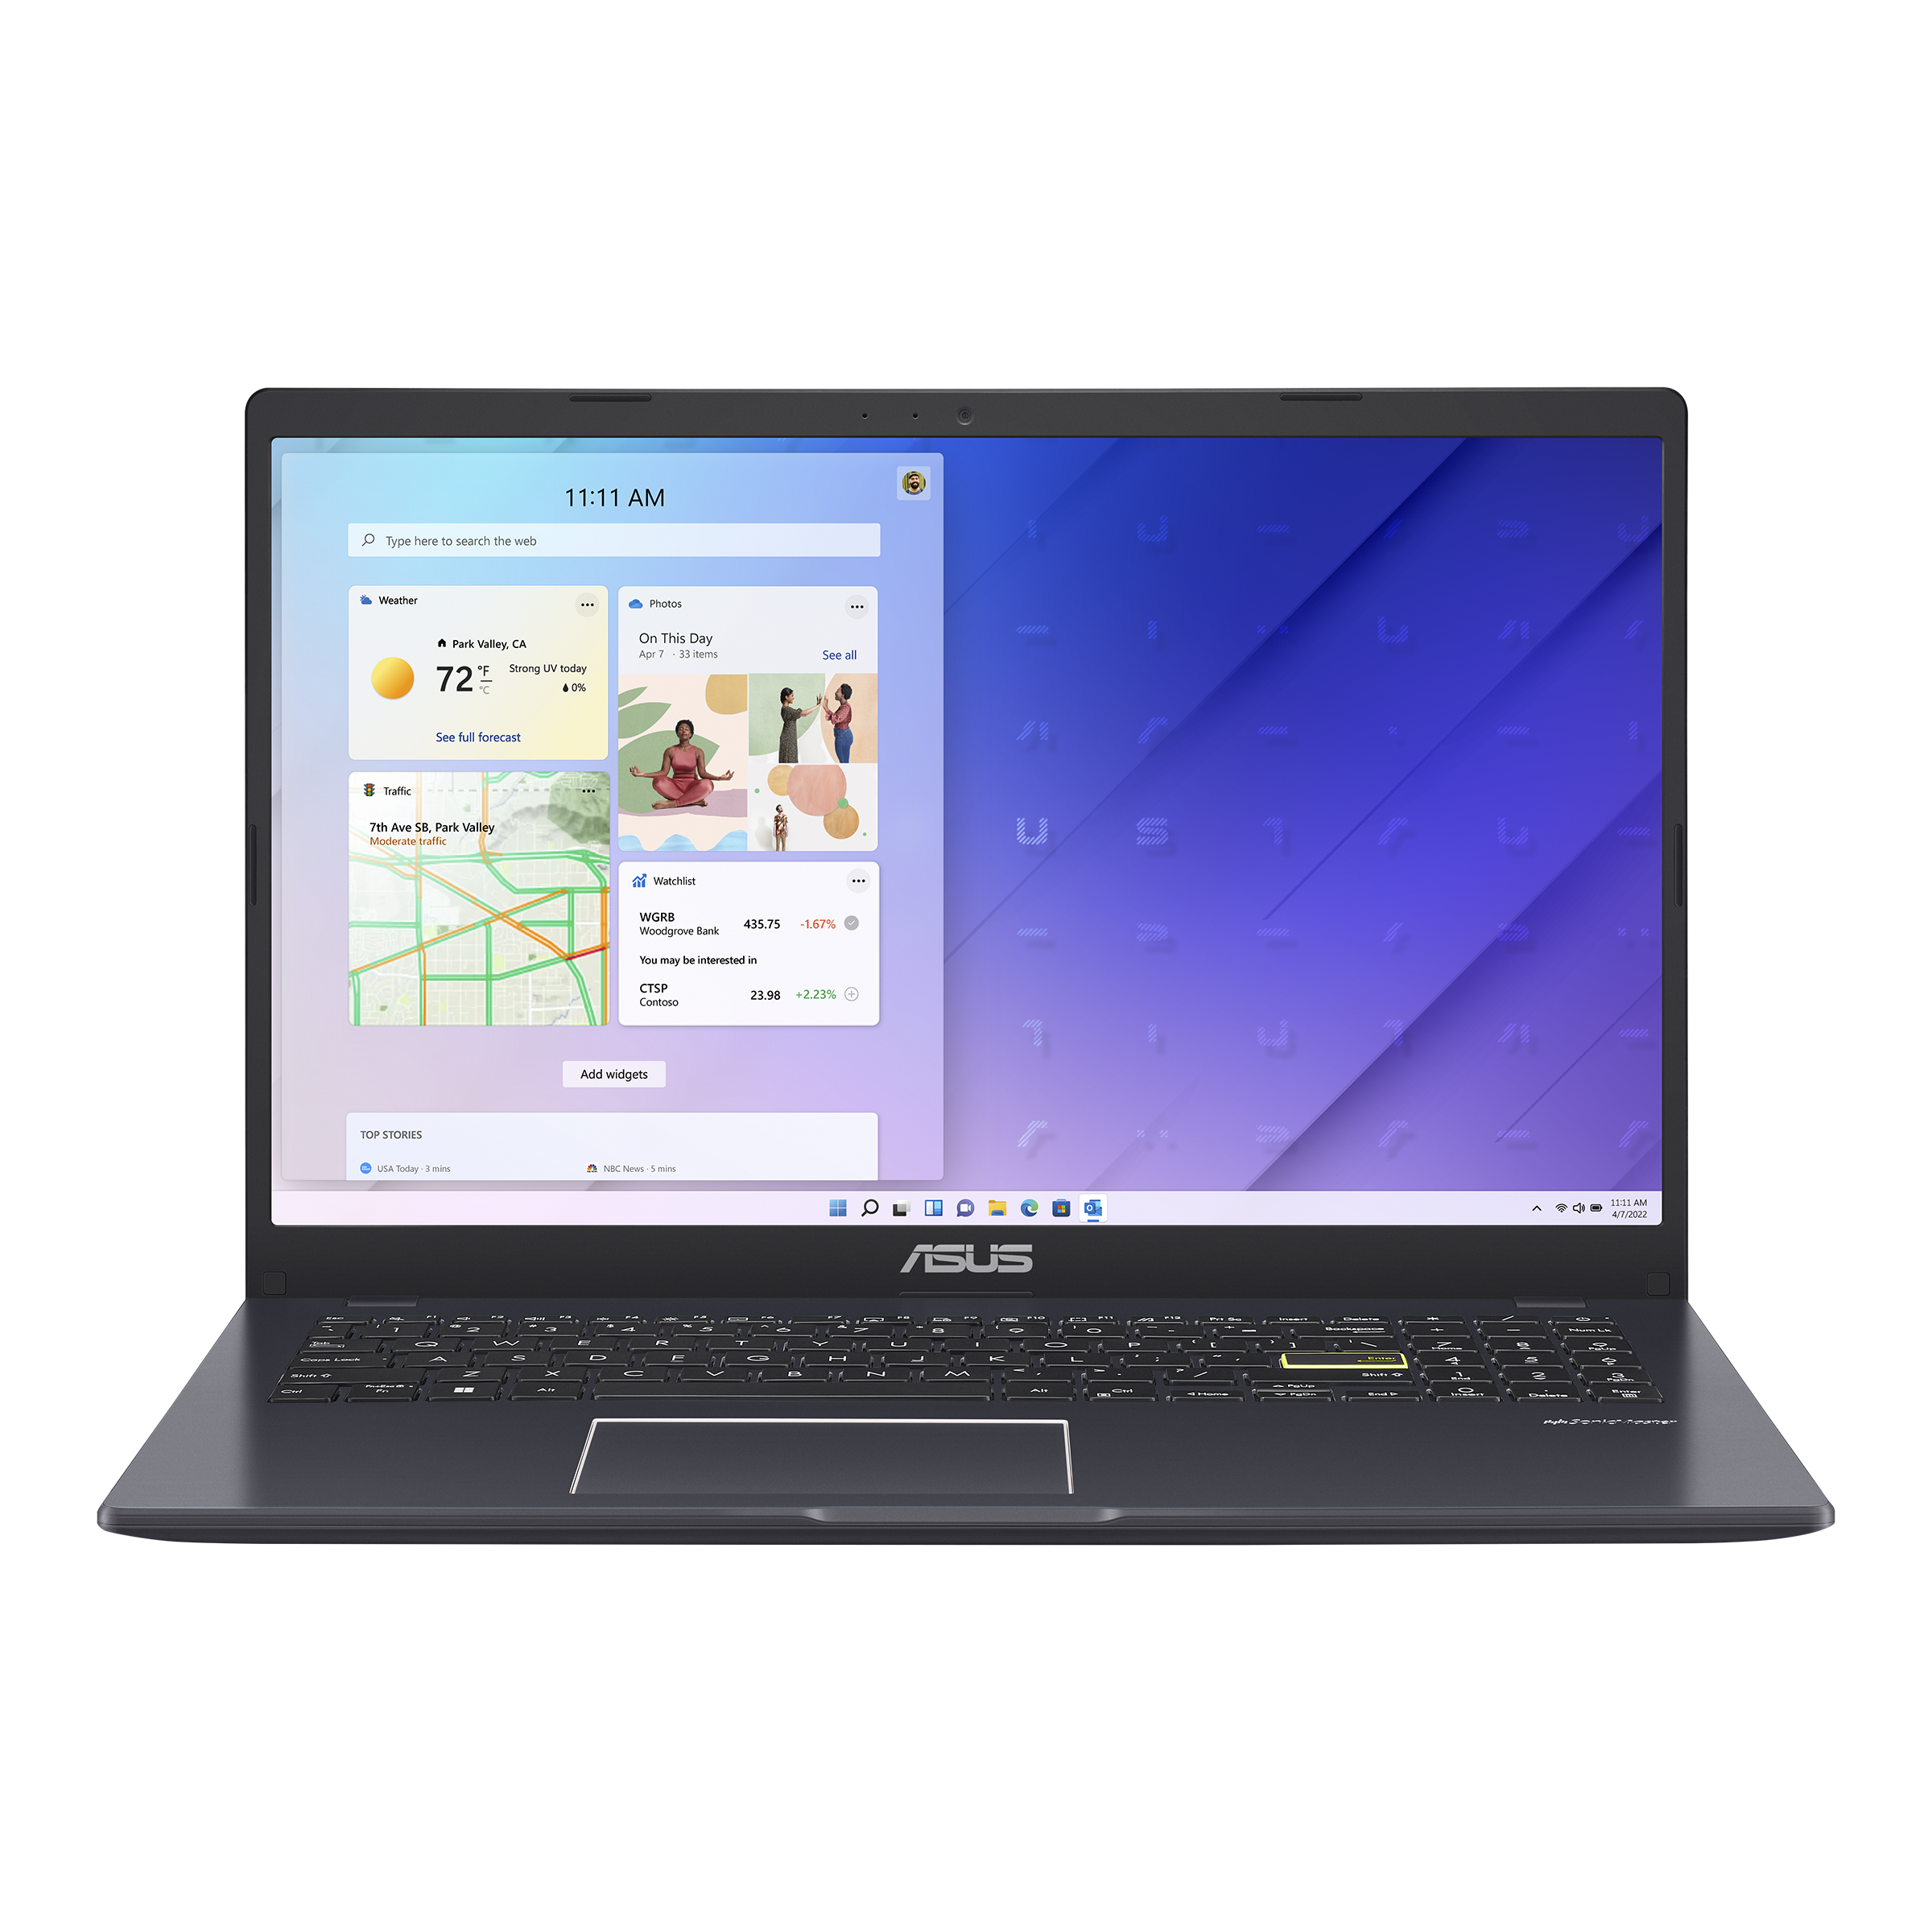 ASUS Vivobook Go 15 L510 - Computadora portátil delgada y ligera, pantalla  FHD de 15.6 pulgadas, procesador Intel Celeron N4020, 4 GB de RAM, 64 GB de